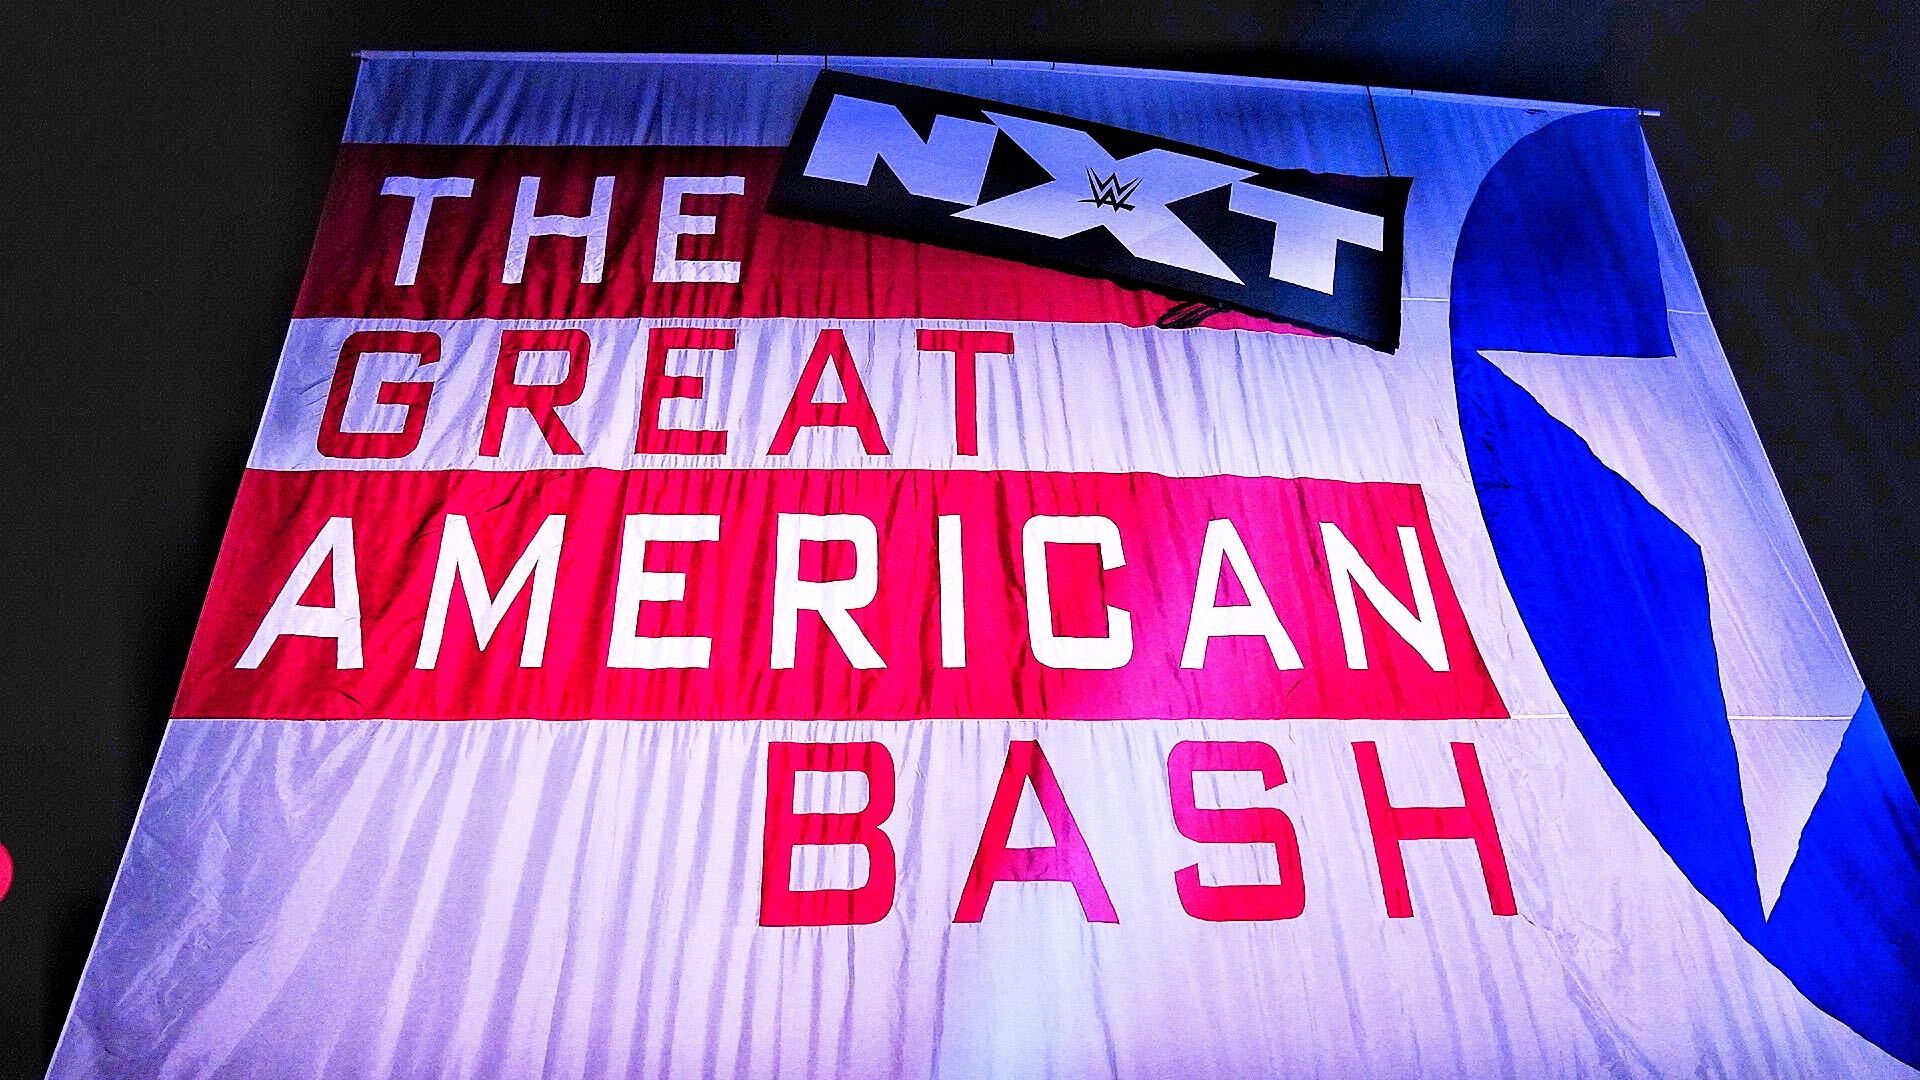 نتائج عرض NXT Great American Bash بتاريخ 02.07.2020 -الليلة الأولى